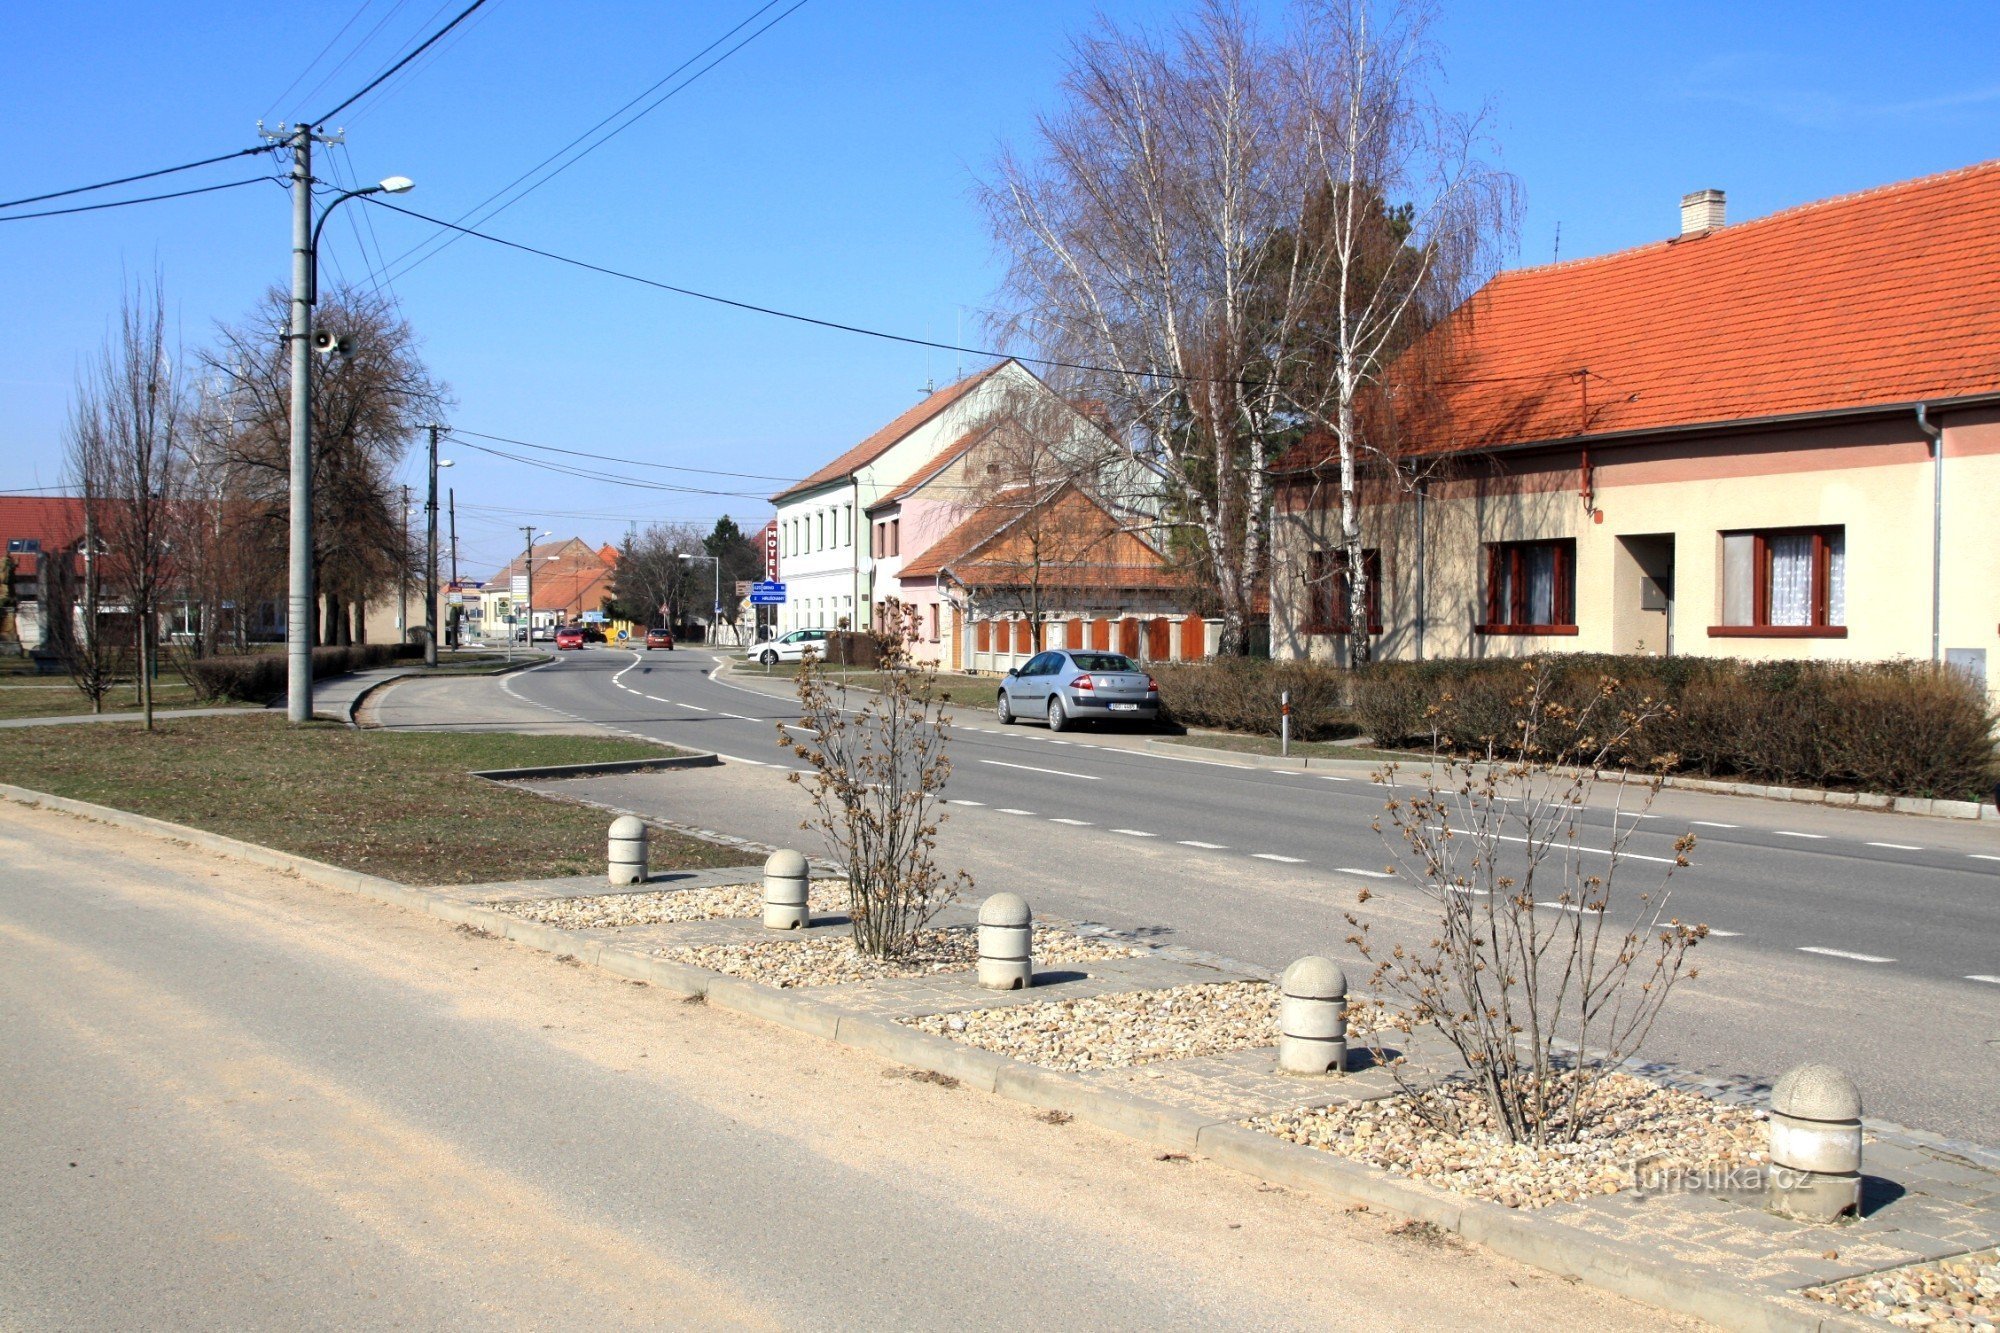 Die Hauptstraße in Vojkovice